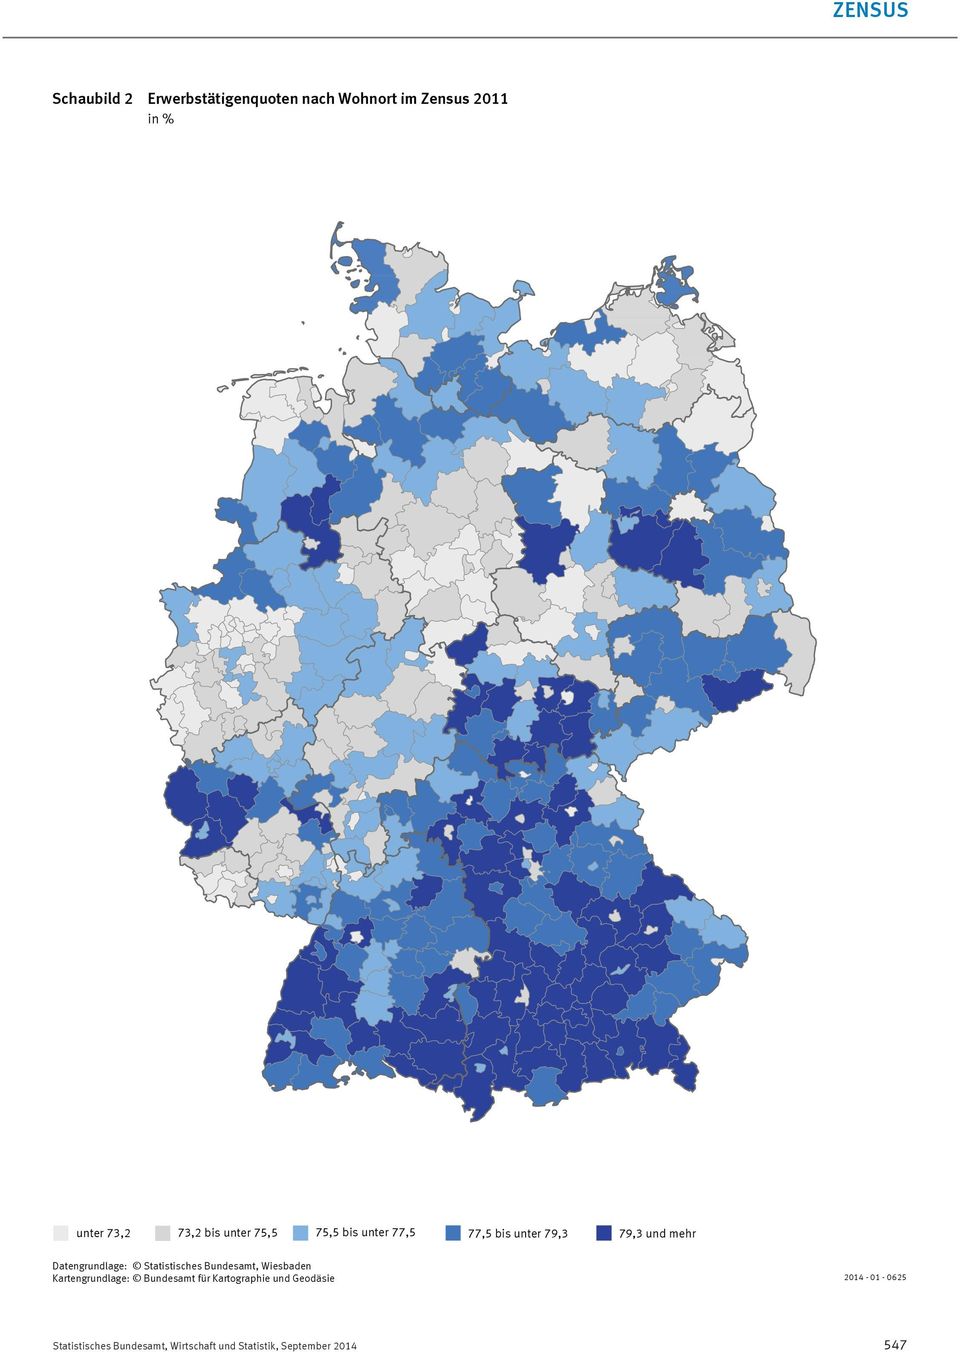 Datengrundlage: Statistisches Bundesamt, Wiesbaden Kartengrundlage: Bundesamt für